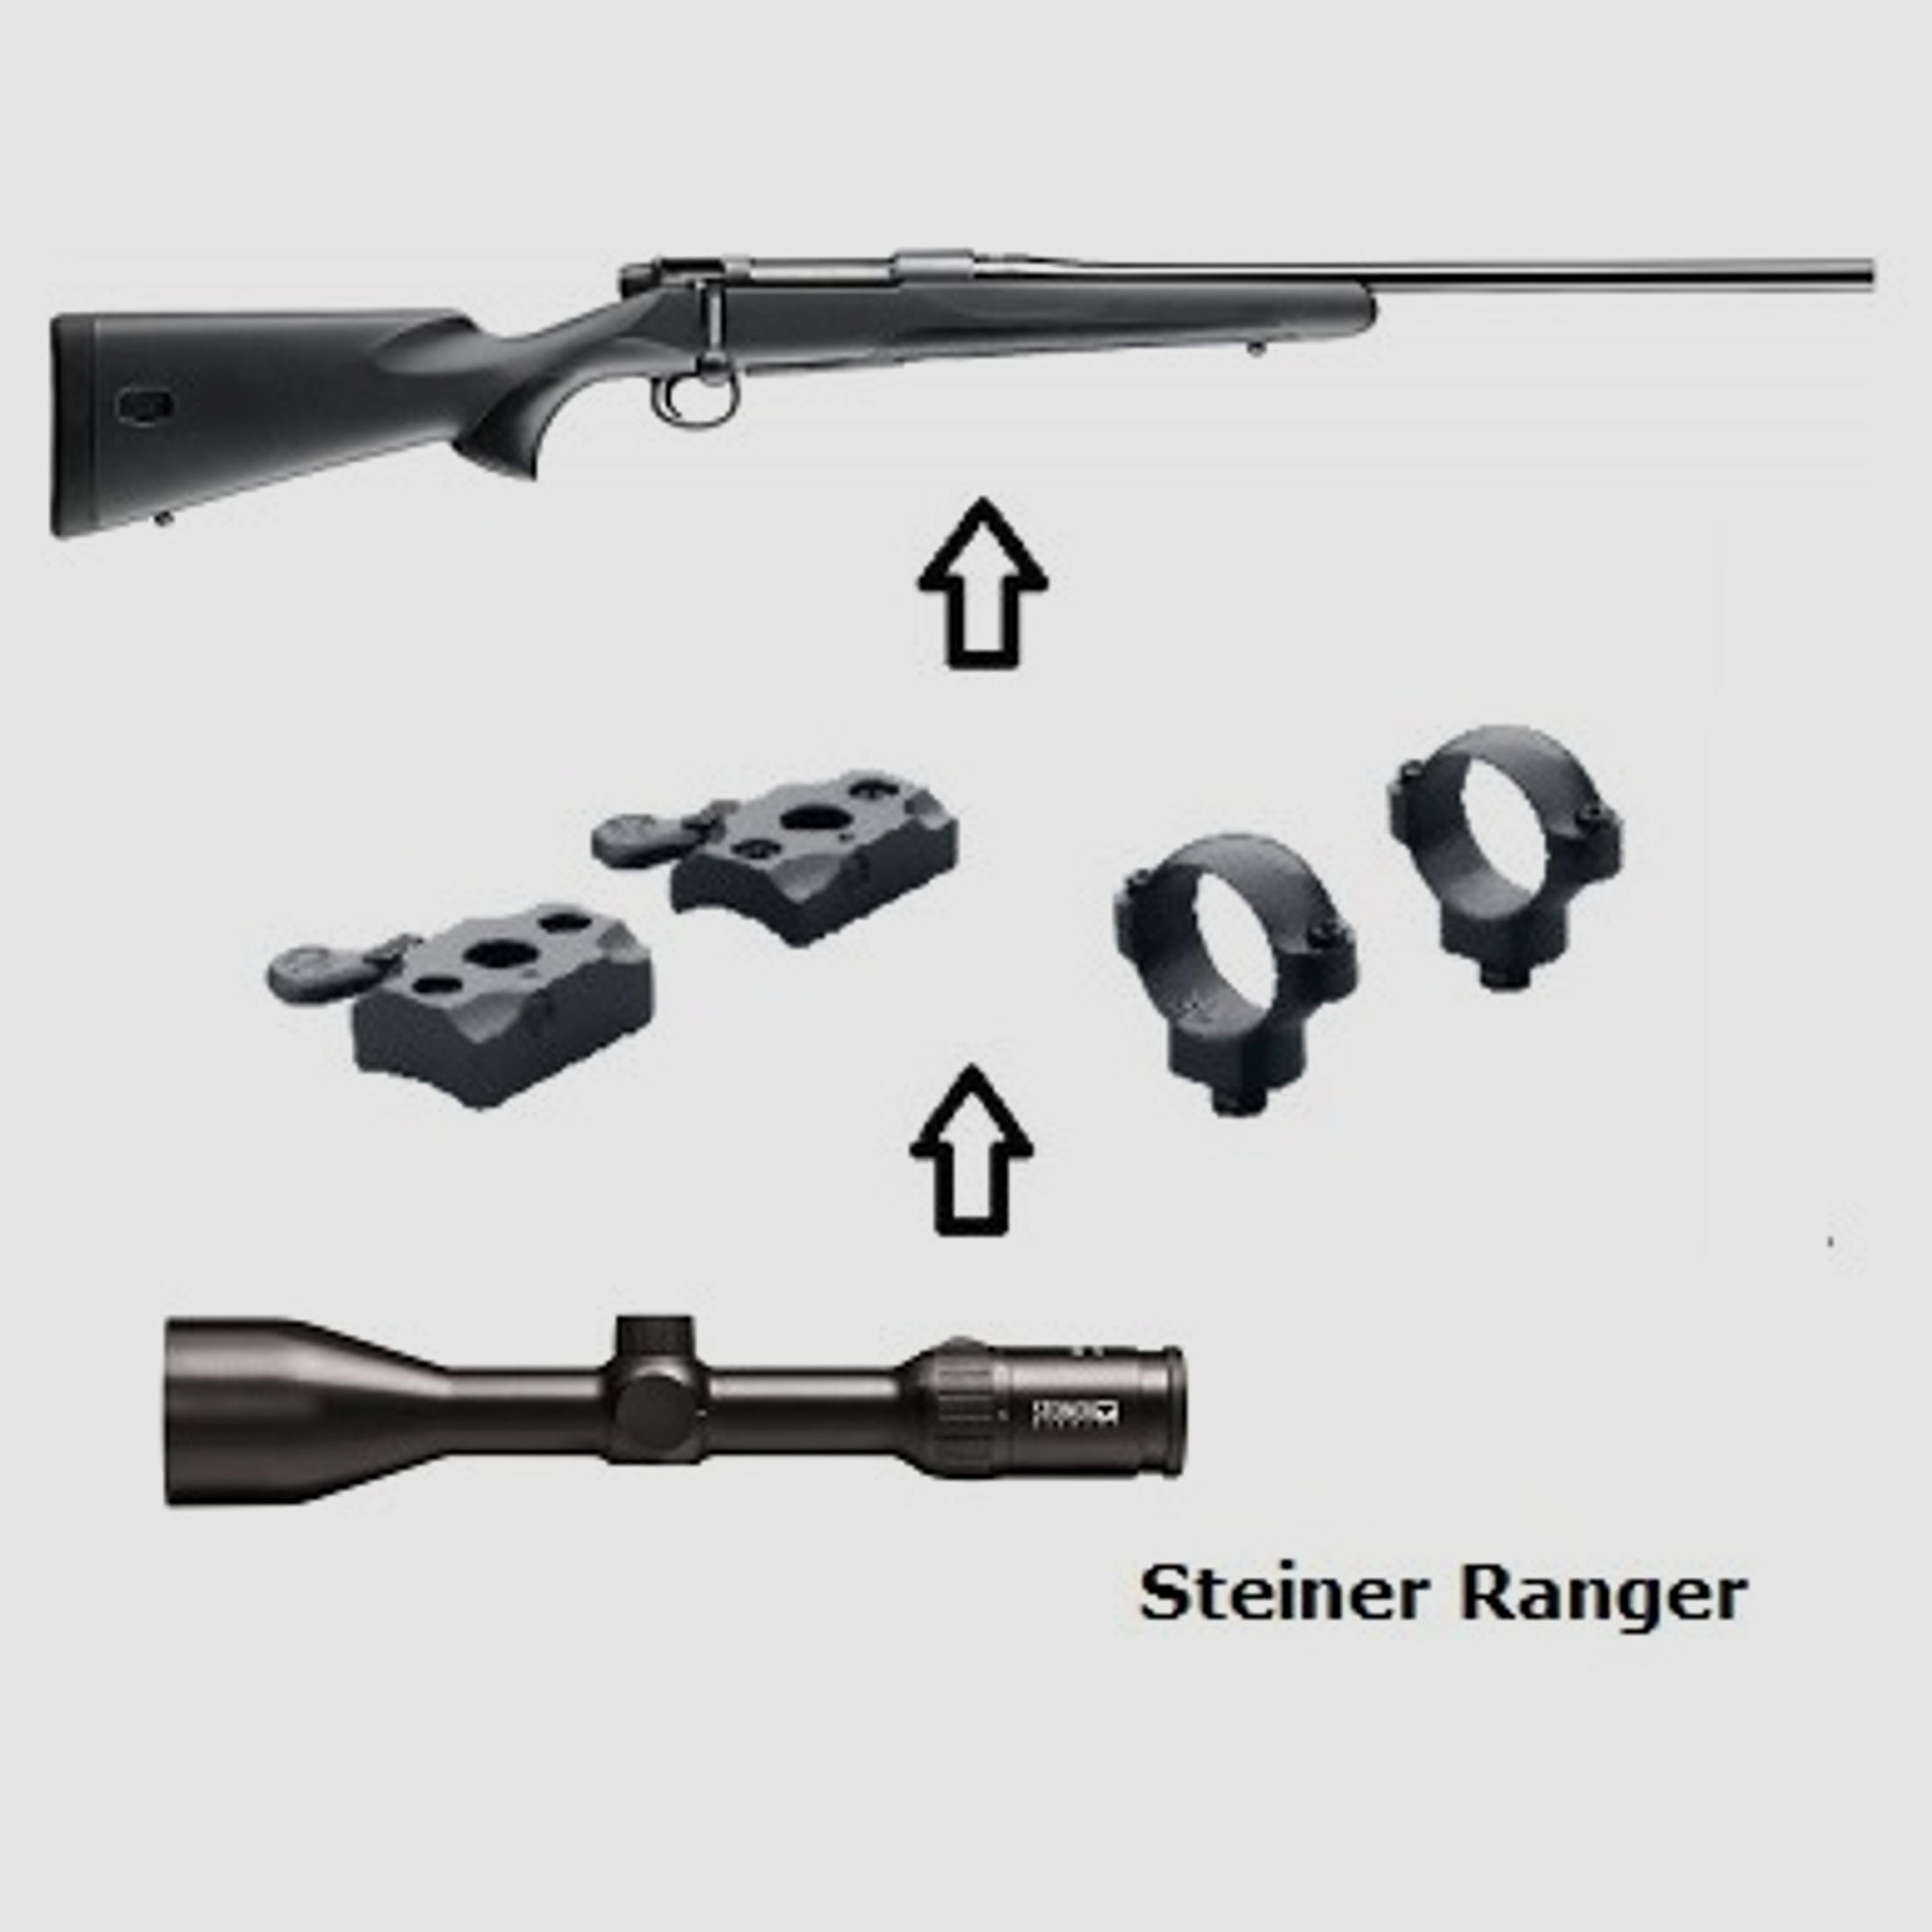 Mauser M18 + Steiner Ranger 3-12x56 + Montage + ... Komplettpaket